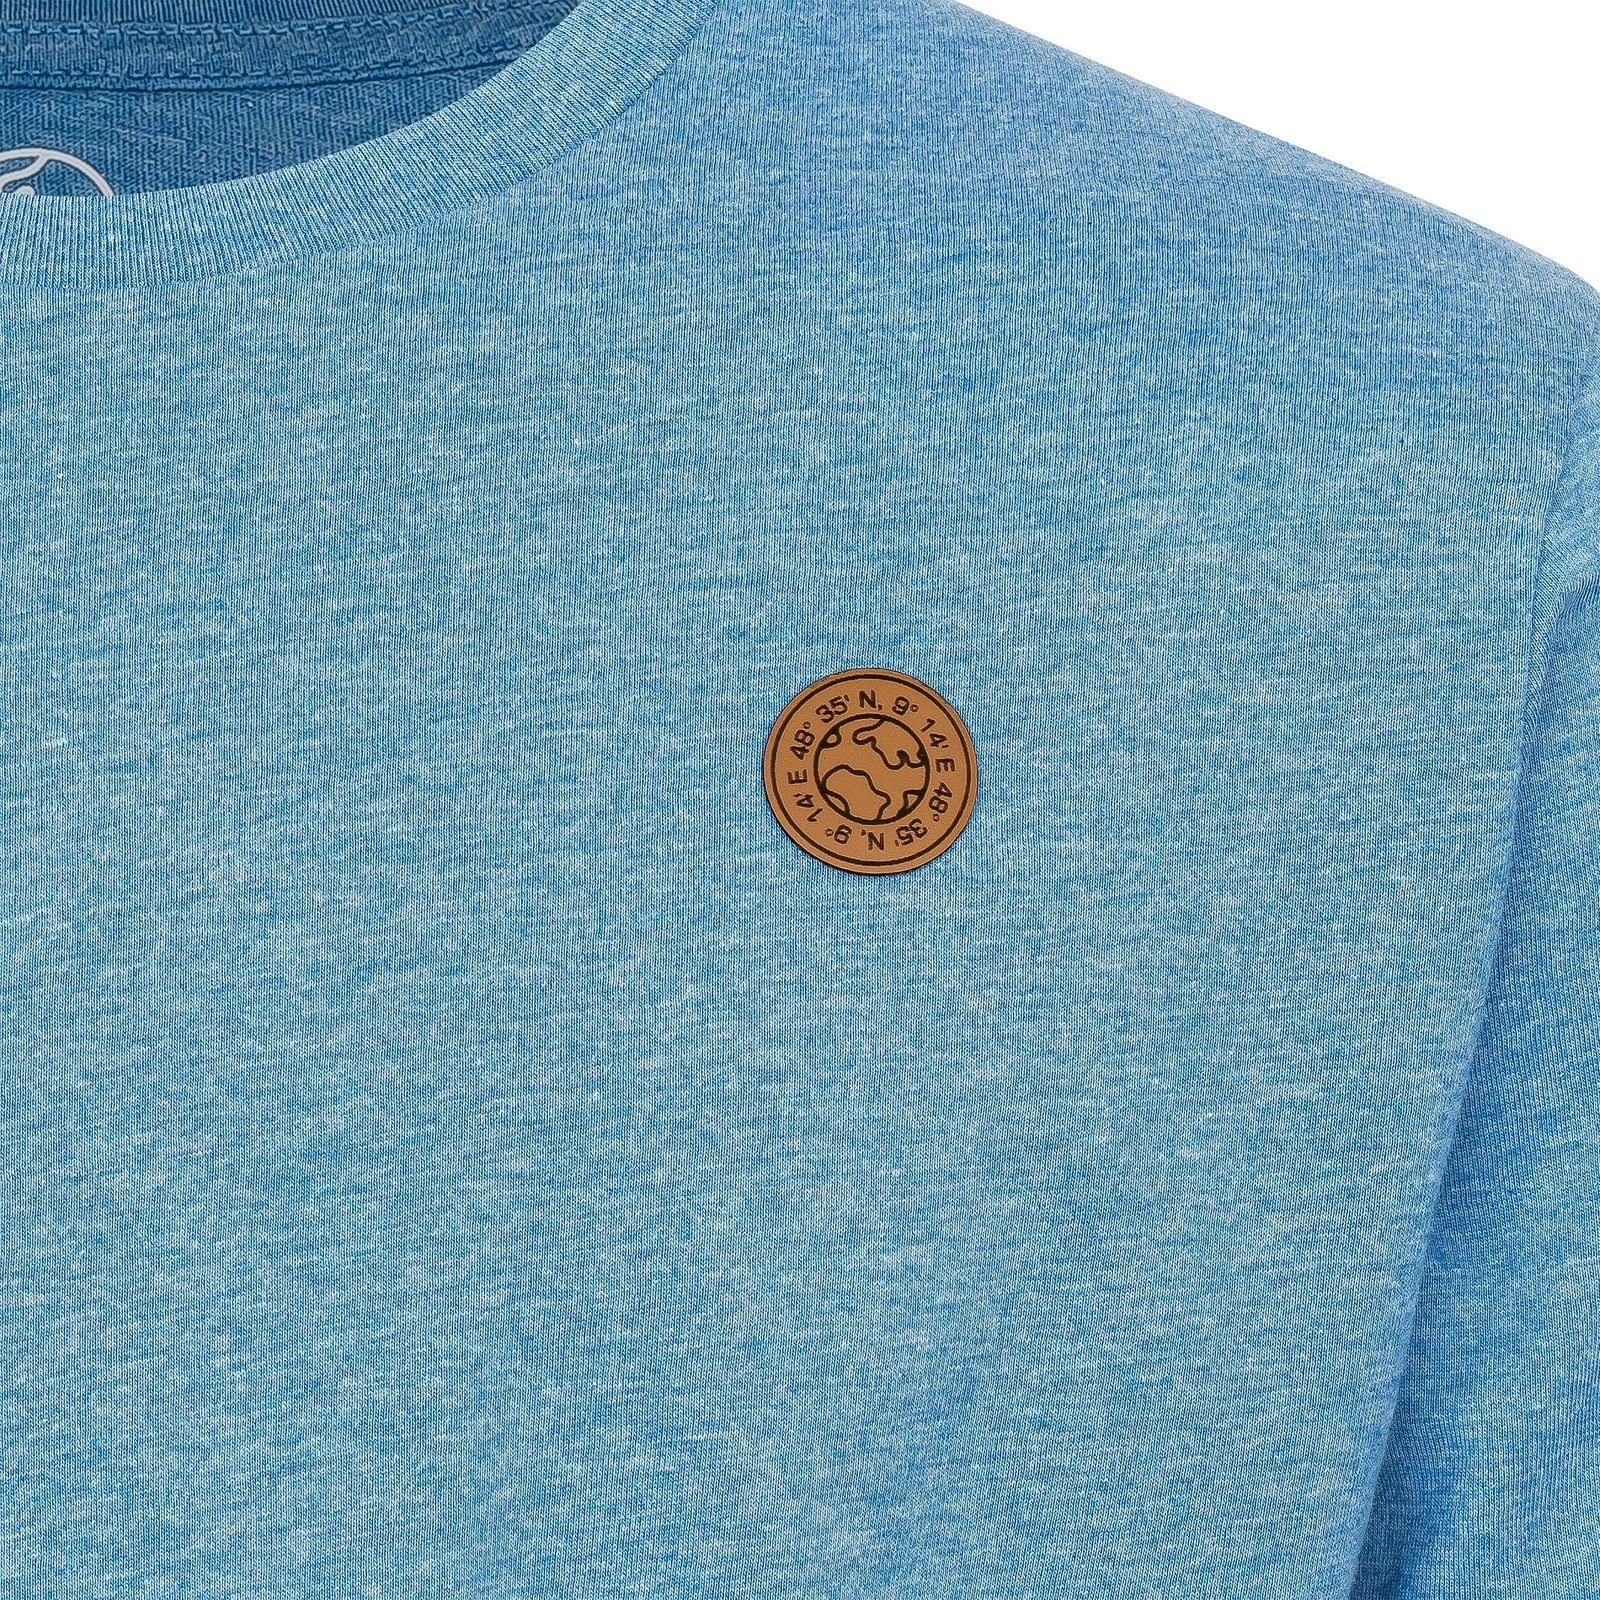 Gradnetz T-Shirt basic leather blau & 100% nachhaltig meliert unisex Biobaumwolle fair